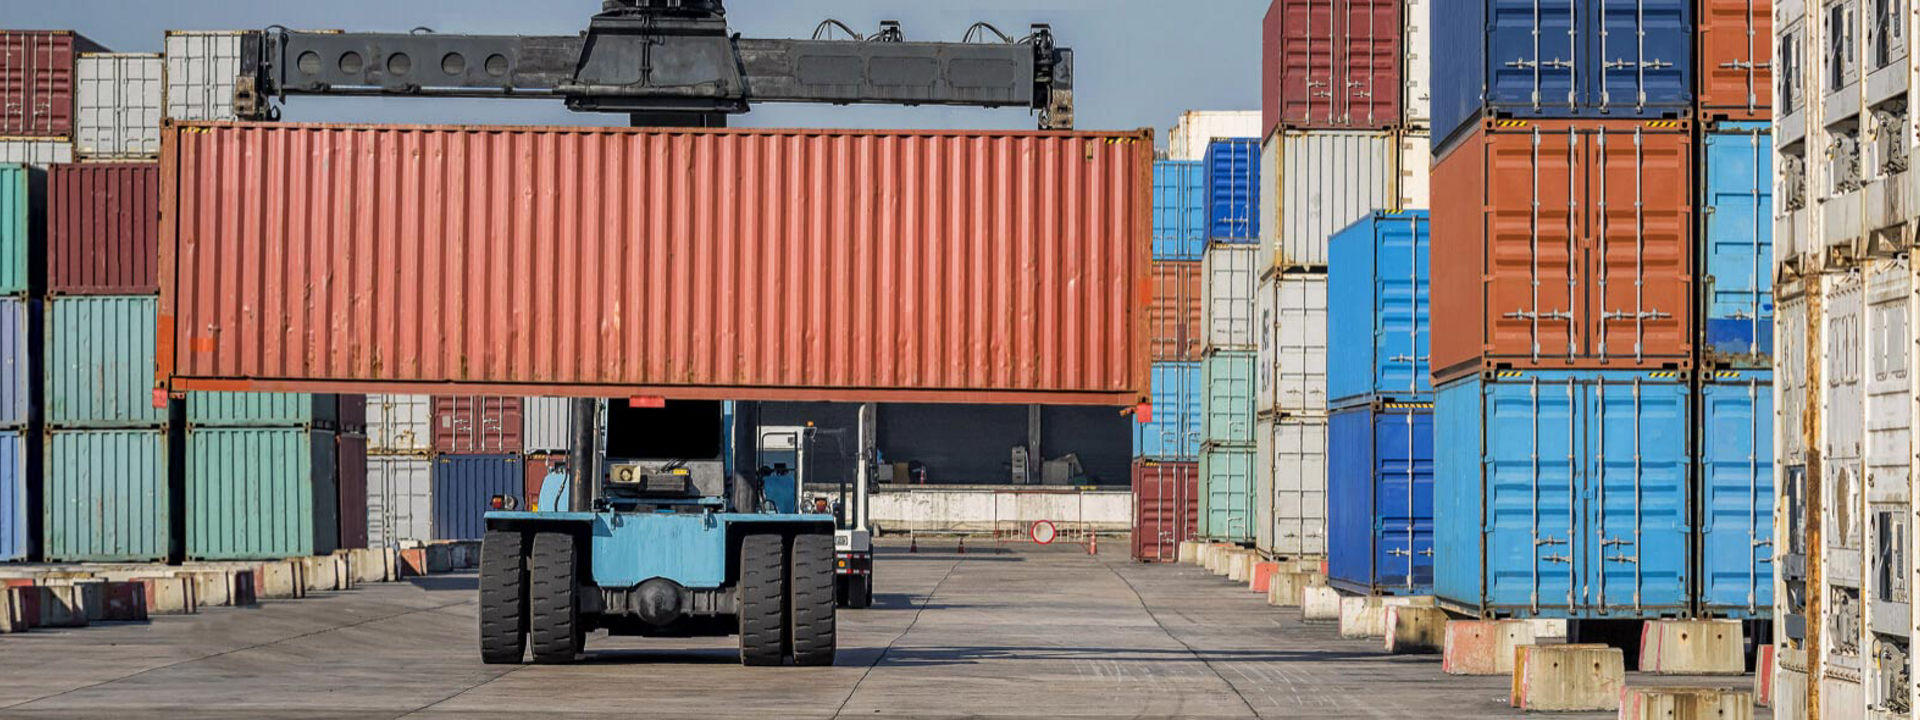 Un porte-conteneur équipé de pneus Génie Civil Bridgestone déplace des conteneurs d'expédition dans un grand port industriel.